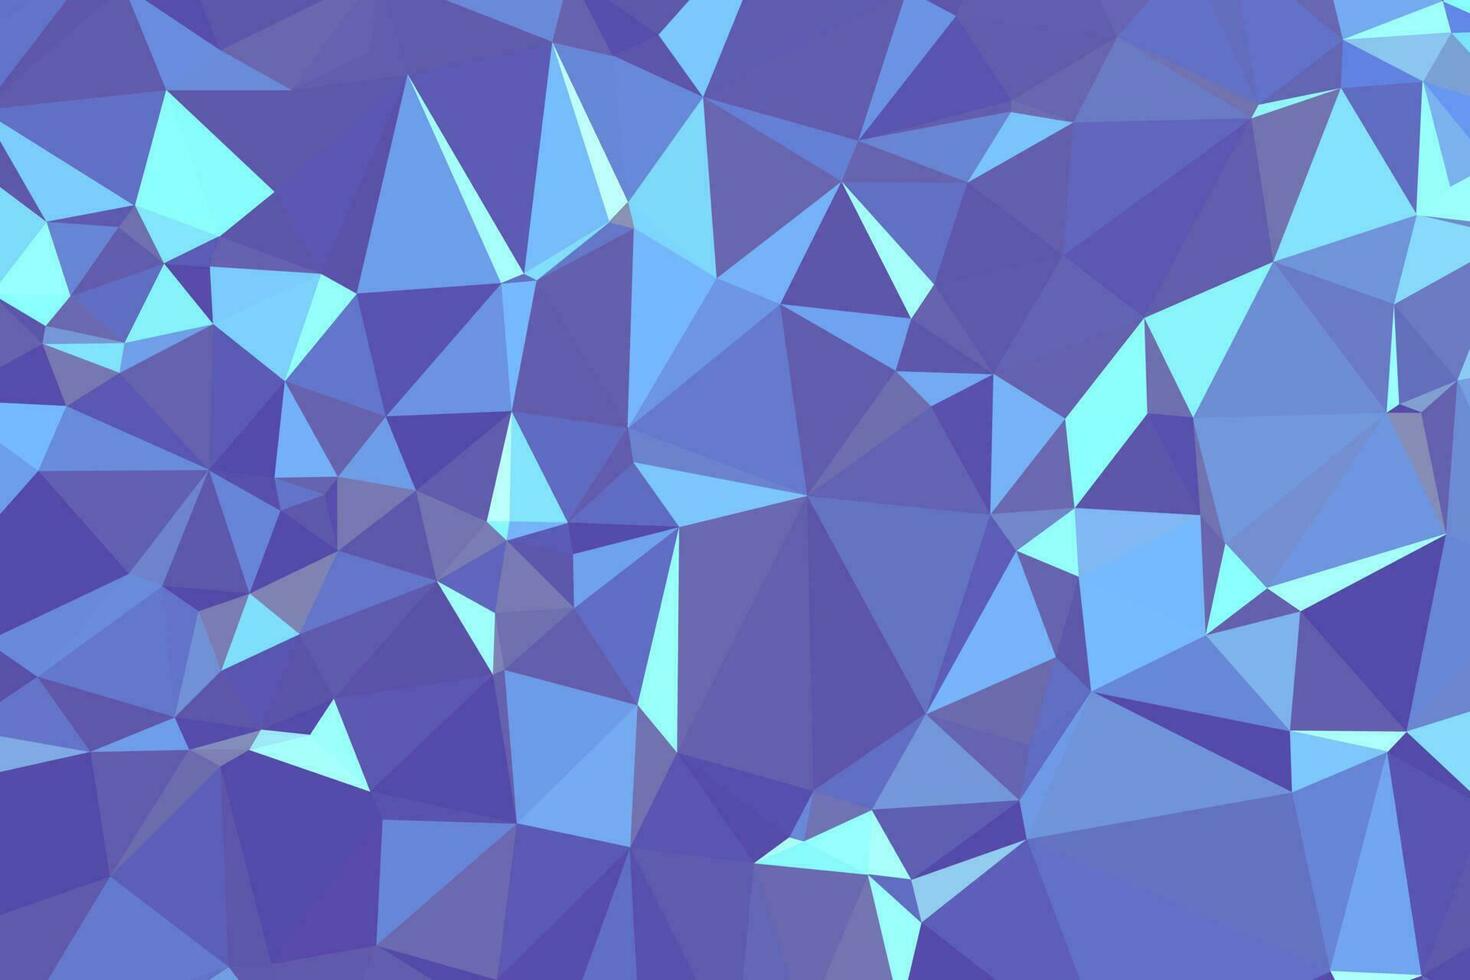 abstrakter strukturierter blauer polygonaler Hintergrund. Low-Poly-Geometrie bestehend aus Dreiecken unterschiedlicher Größe und Farbe. verwendung in design cover, präsentation, visitenkarte oder website. vektor